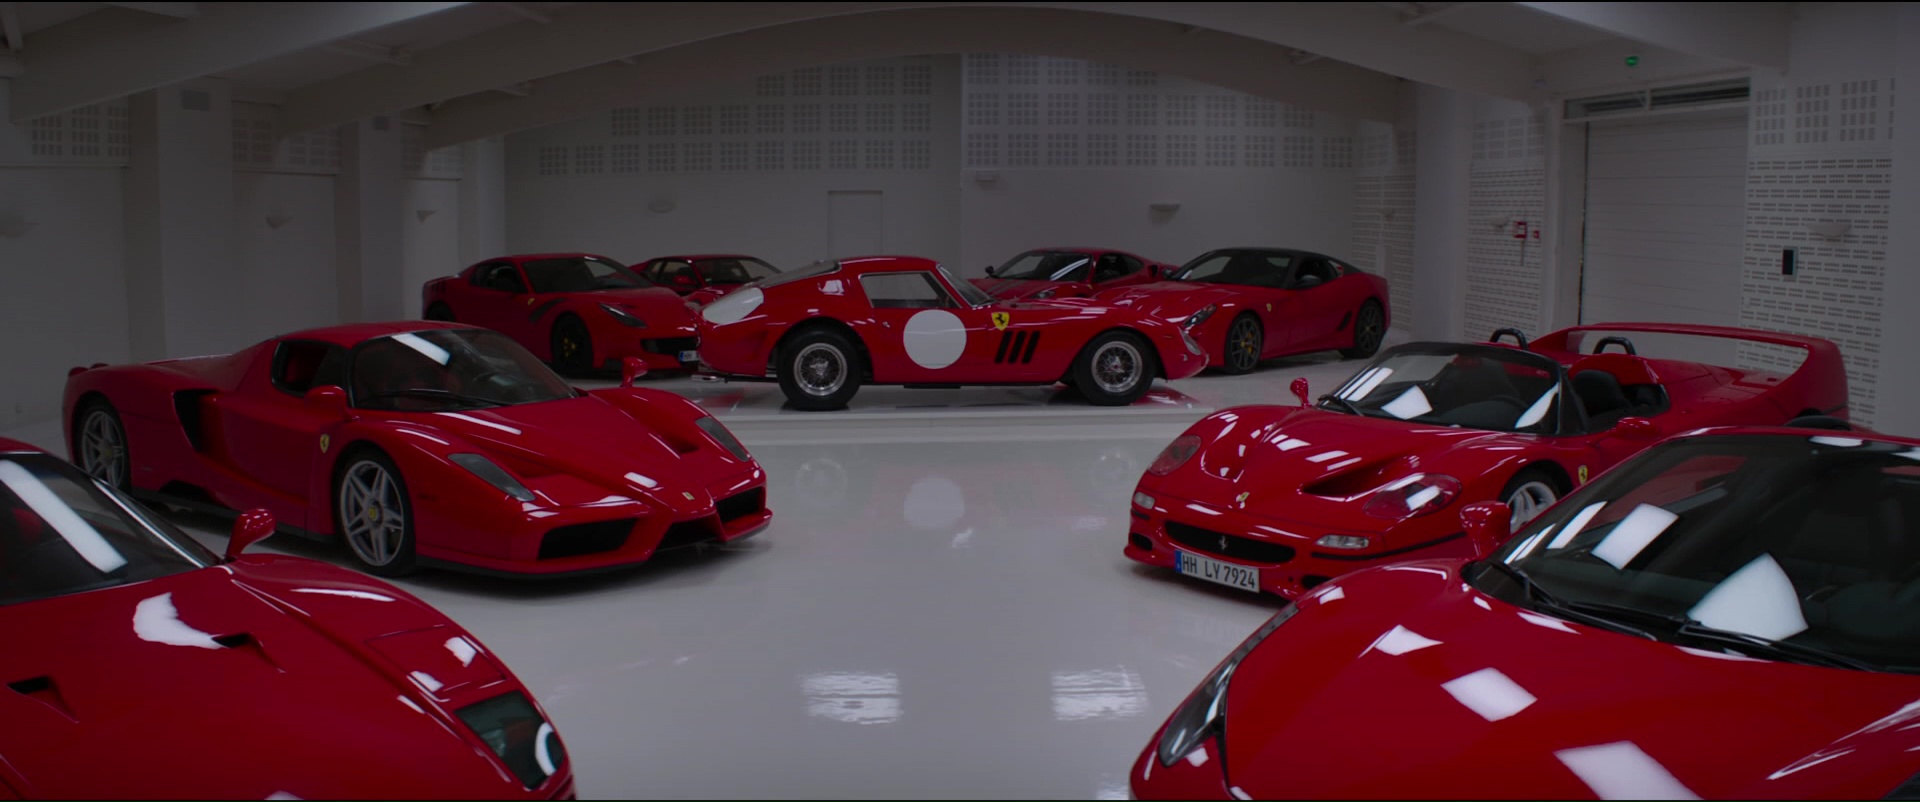 Ferrari Cars in Overdrive (2017) Movie